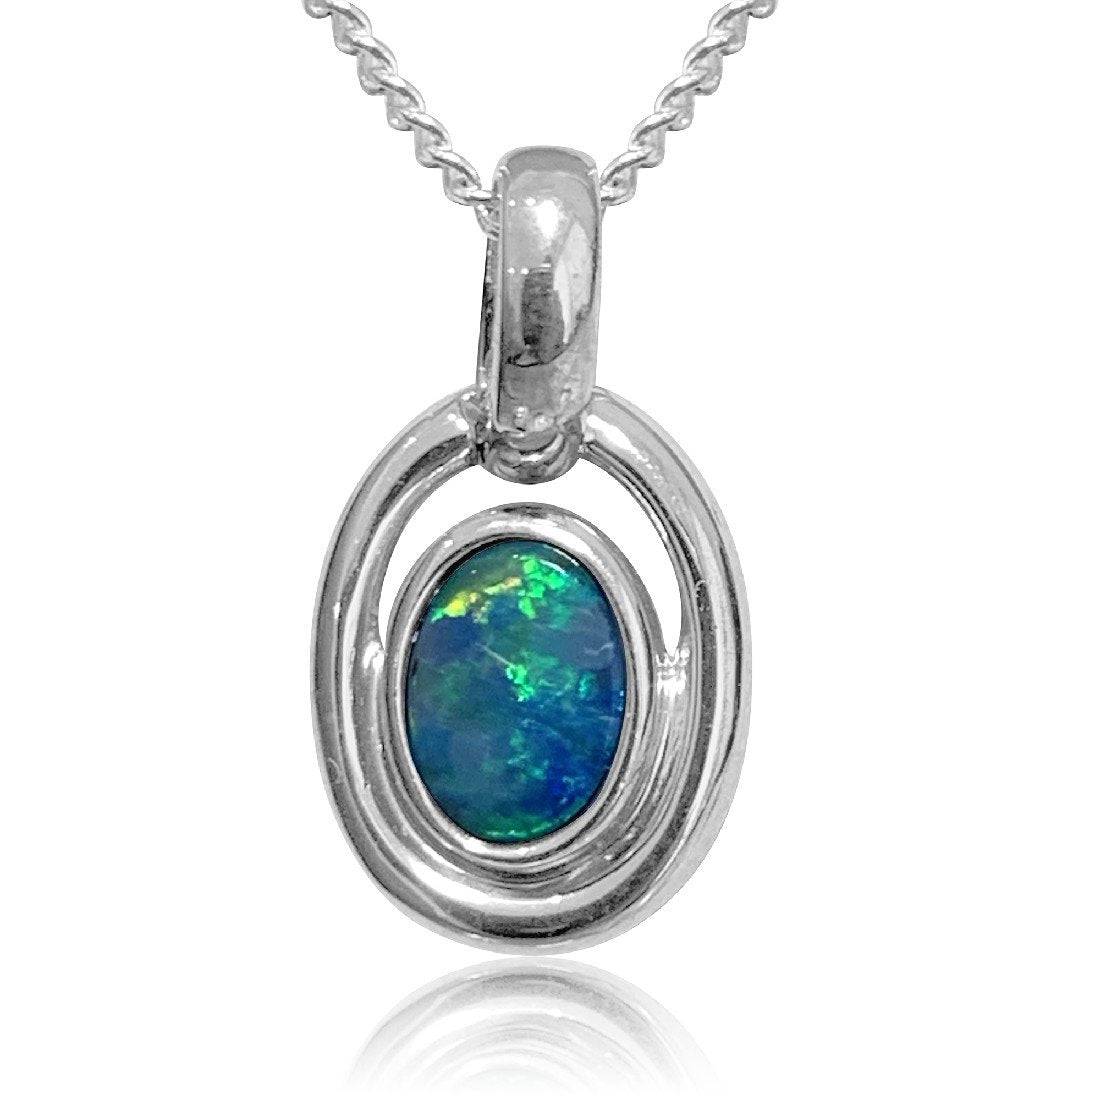 Sterling Silver Opal pendant - Masterpiece Jewellery Opal & Gems Sydney Australia | Online Shop